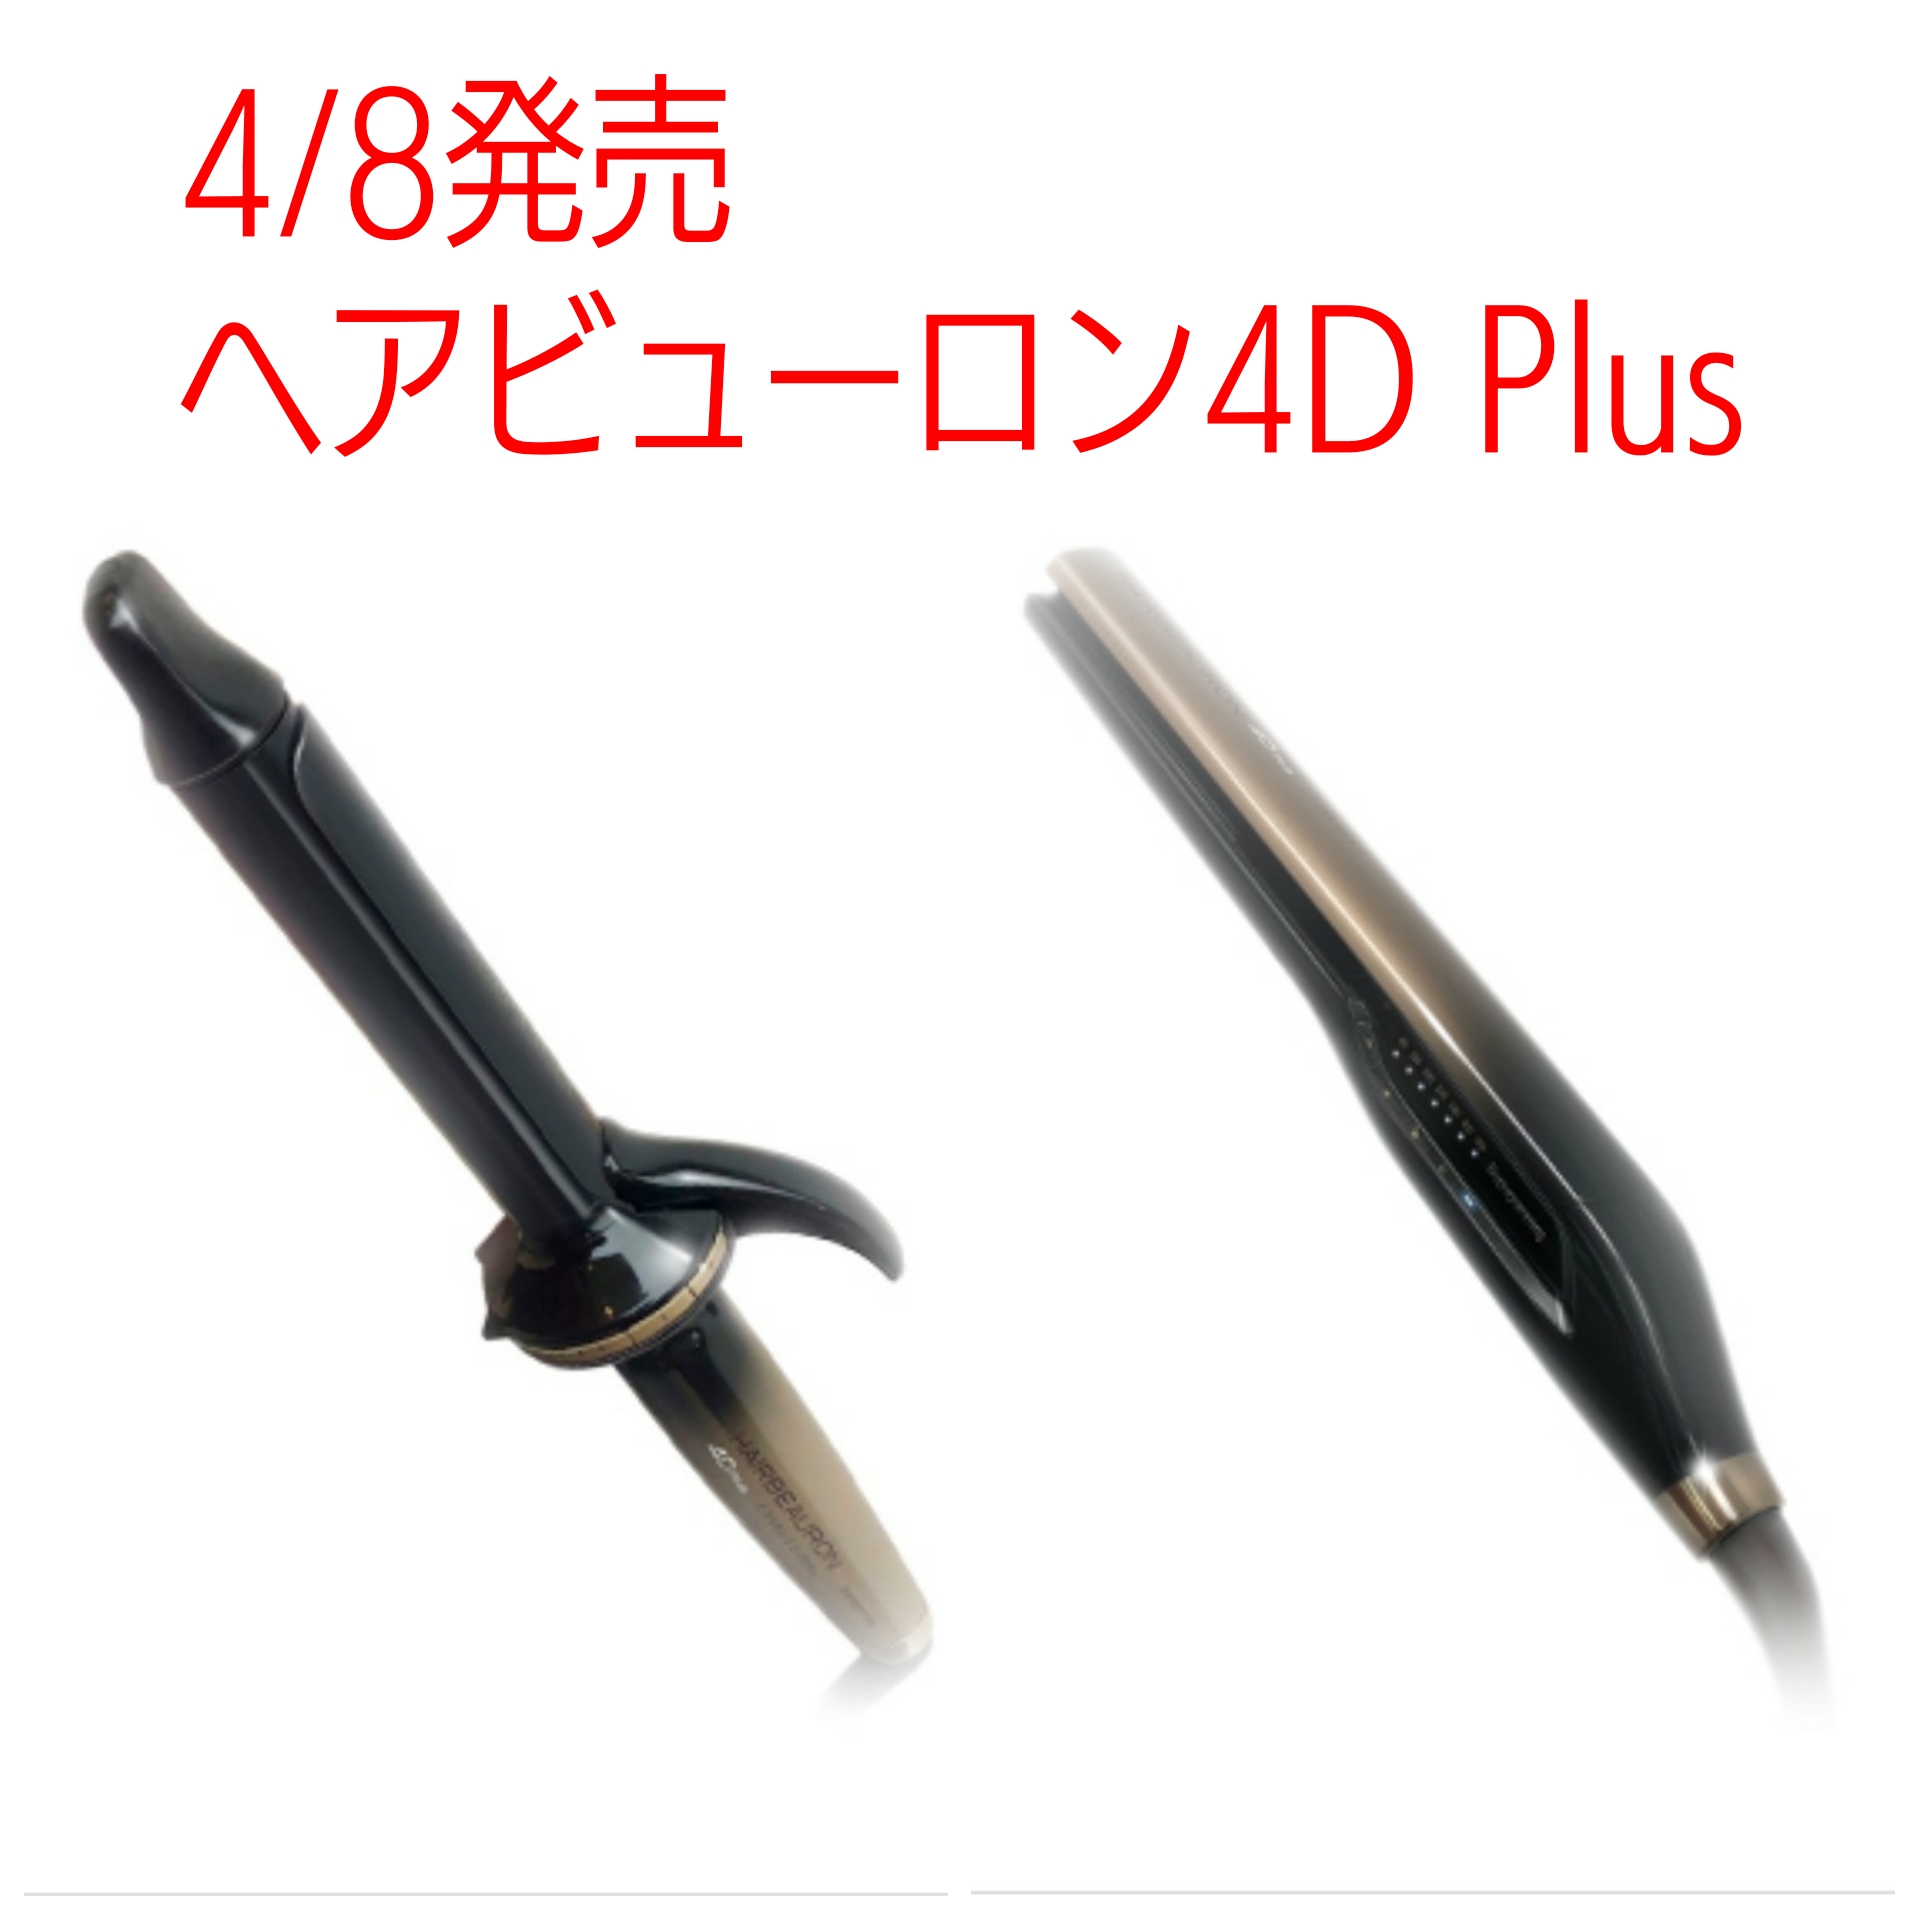 ヘアビューロン4d Plus が4 8に発売 気になる値段は 大阪 神戸